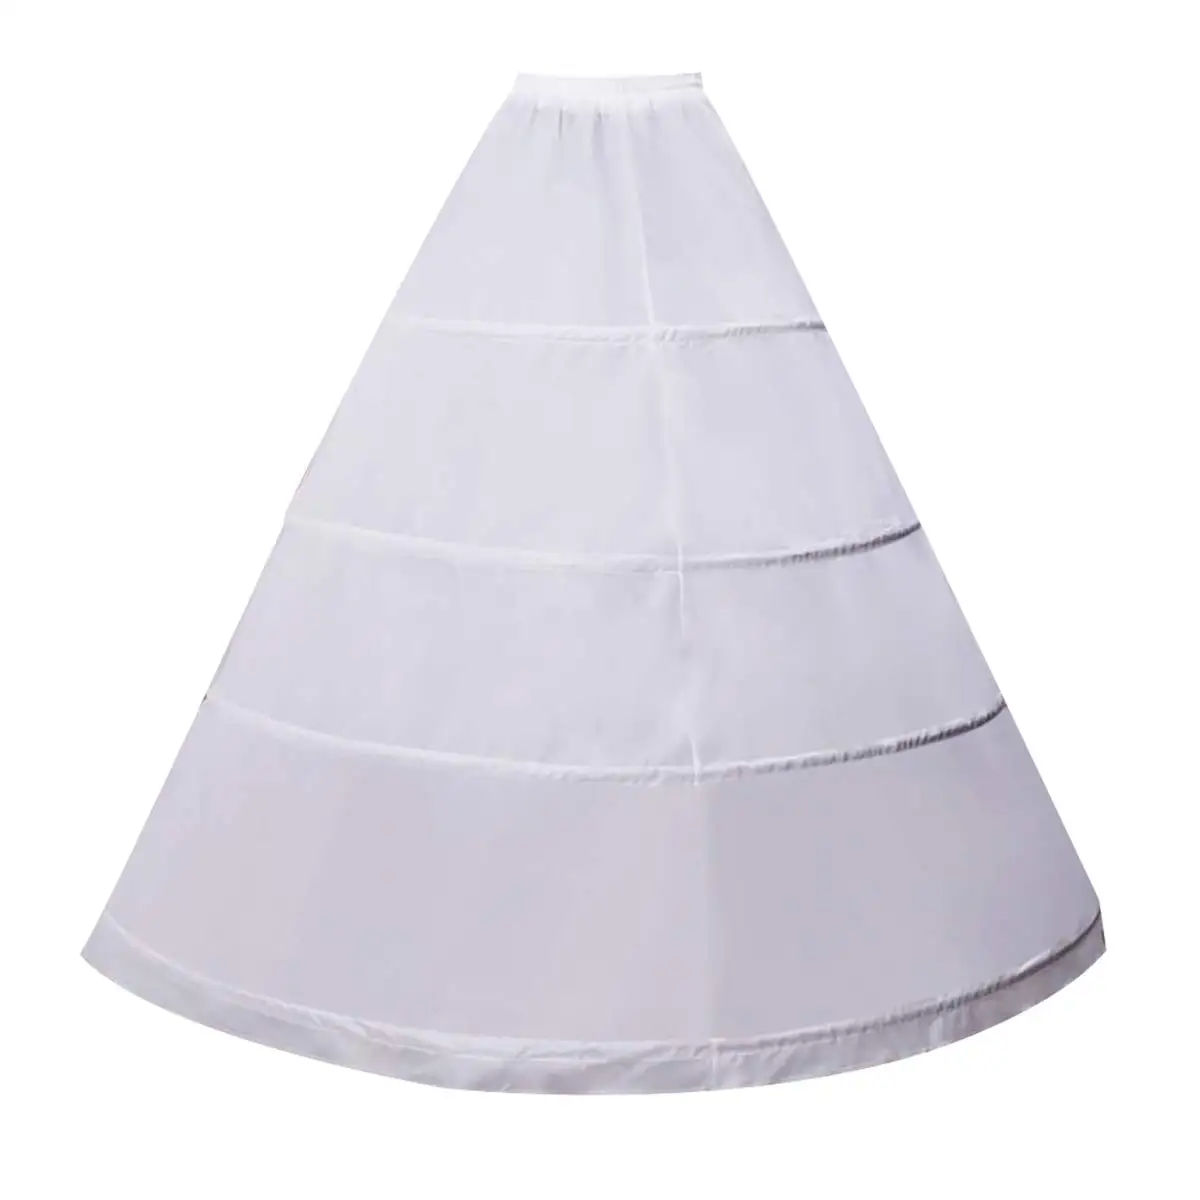 

Women Crinoline Petticoat 4 Hoop A-line Skirt Slips Floor Length Underskirt for Wedding Ball Gown Bridal Dress